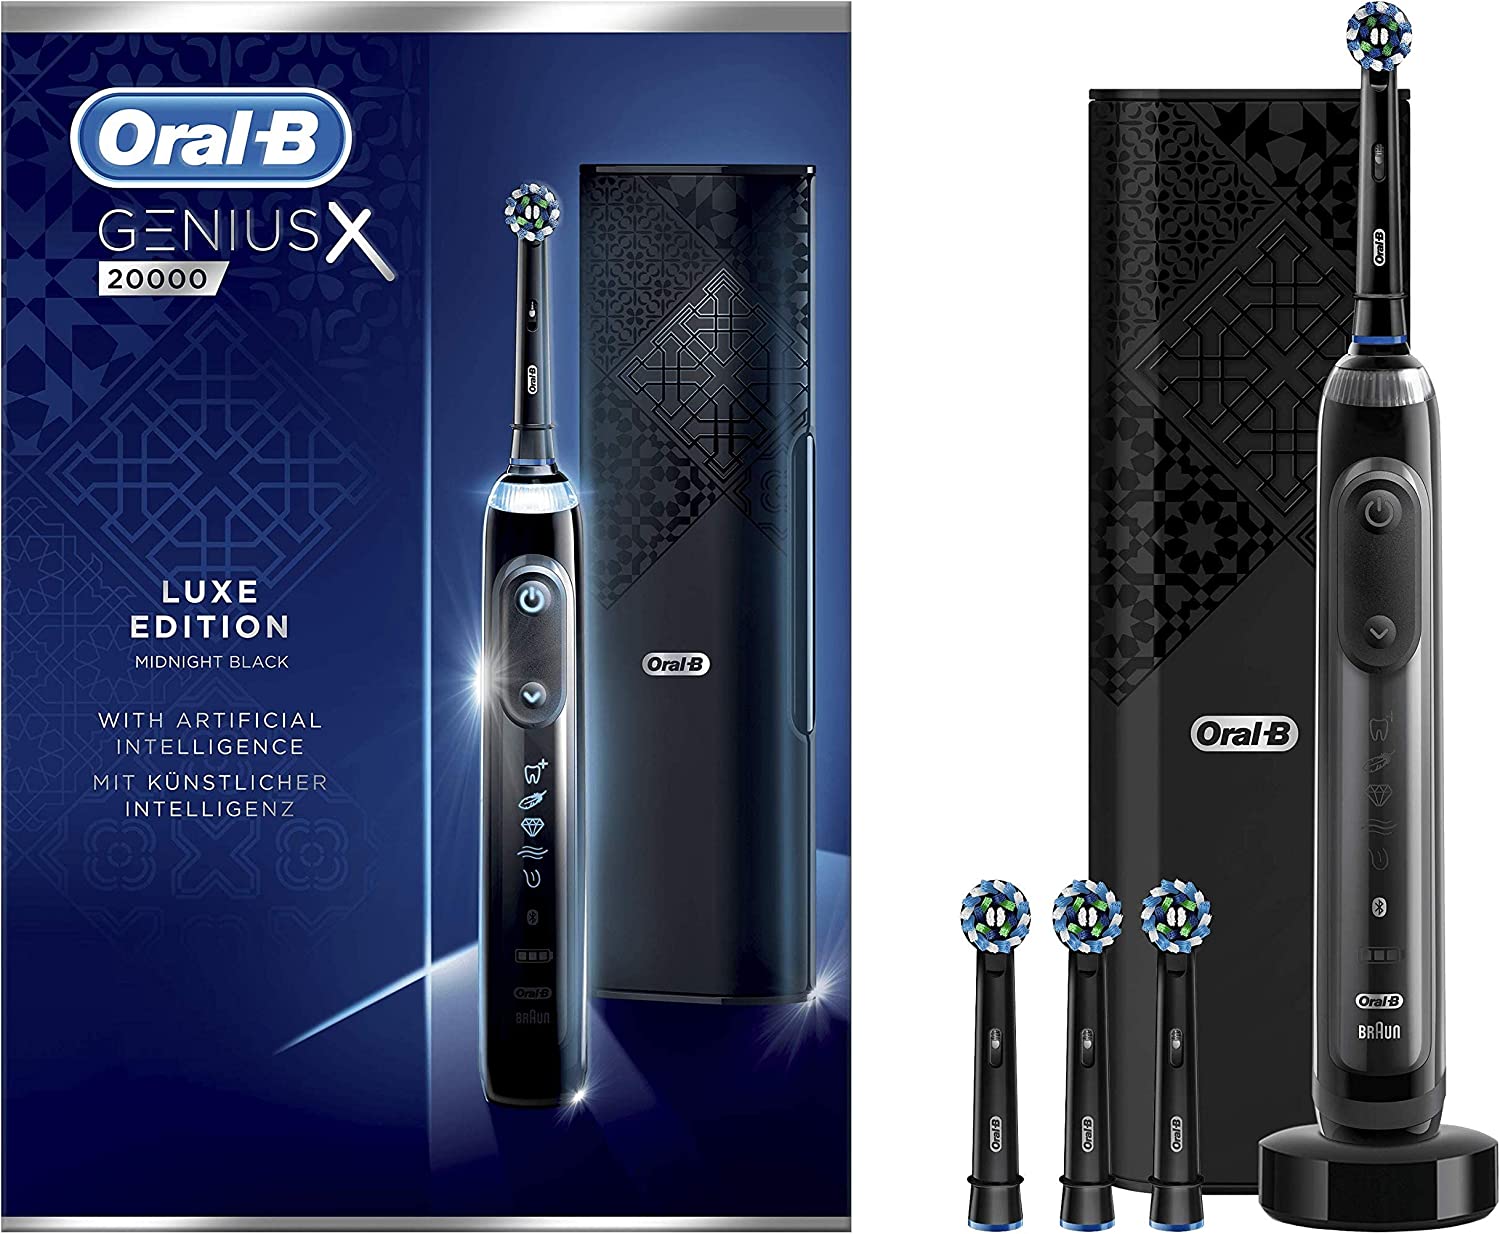 Oral-B Genius X Luxe Edition 20000 vs. Oral-B IO 10